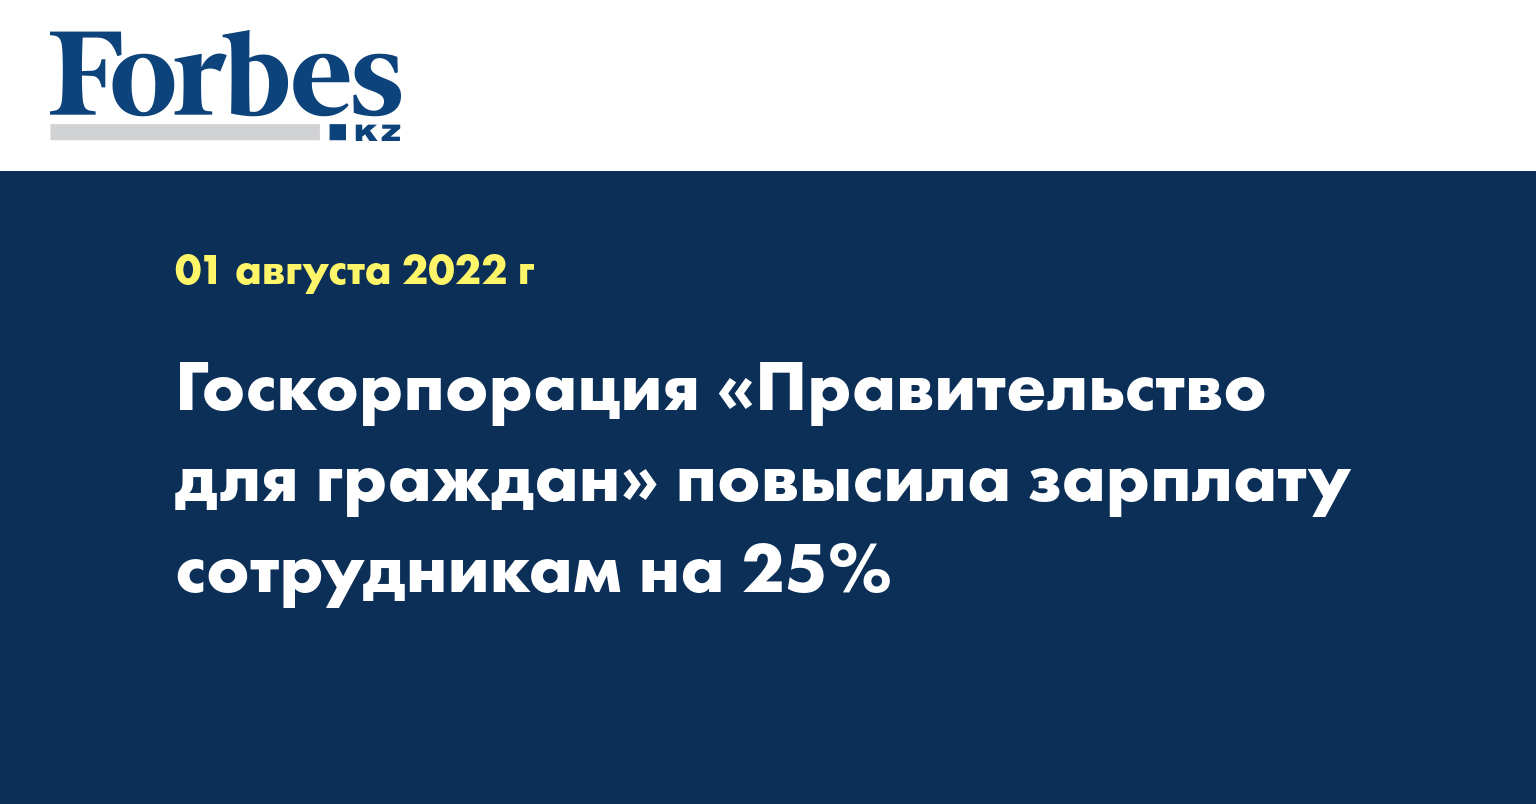 Госкорпорация «Правительство для граждан» в рамках исполнения Комплексного плана «Программа повышения доходов населения до 2025 года» с июля текущего года повысила заработную плату своим сотрудникам на 25%.